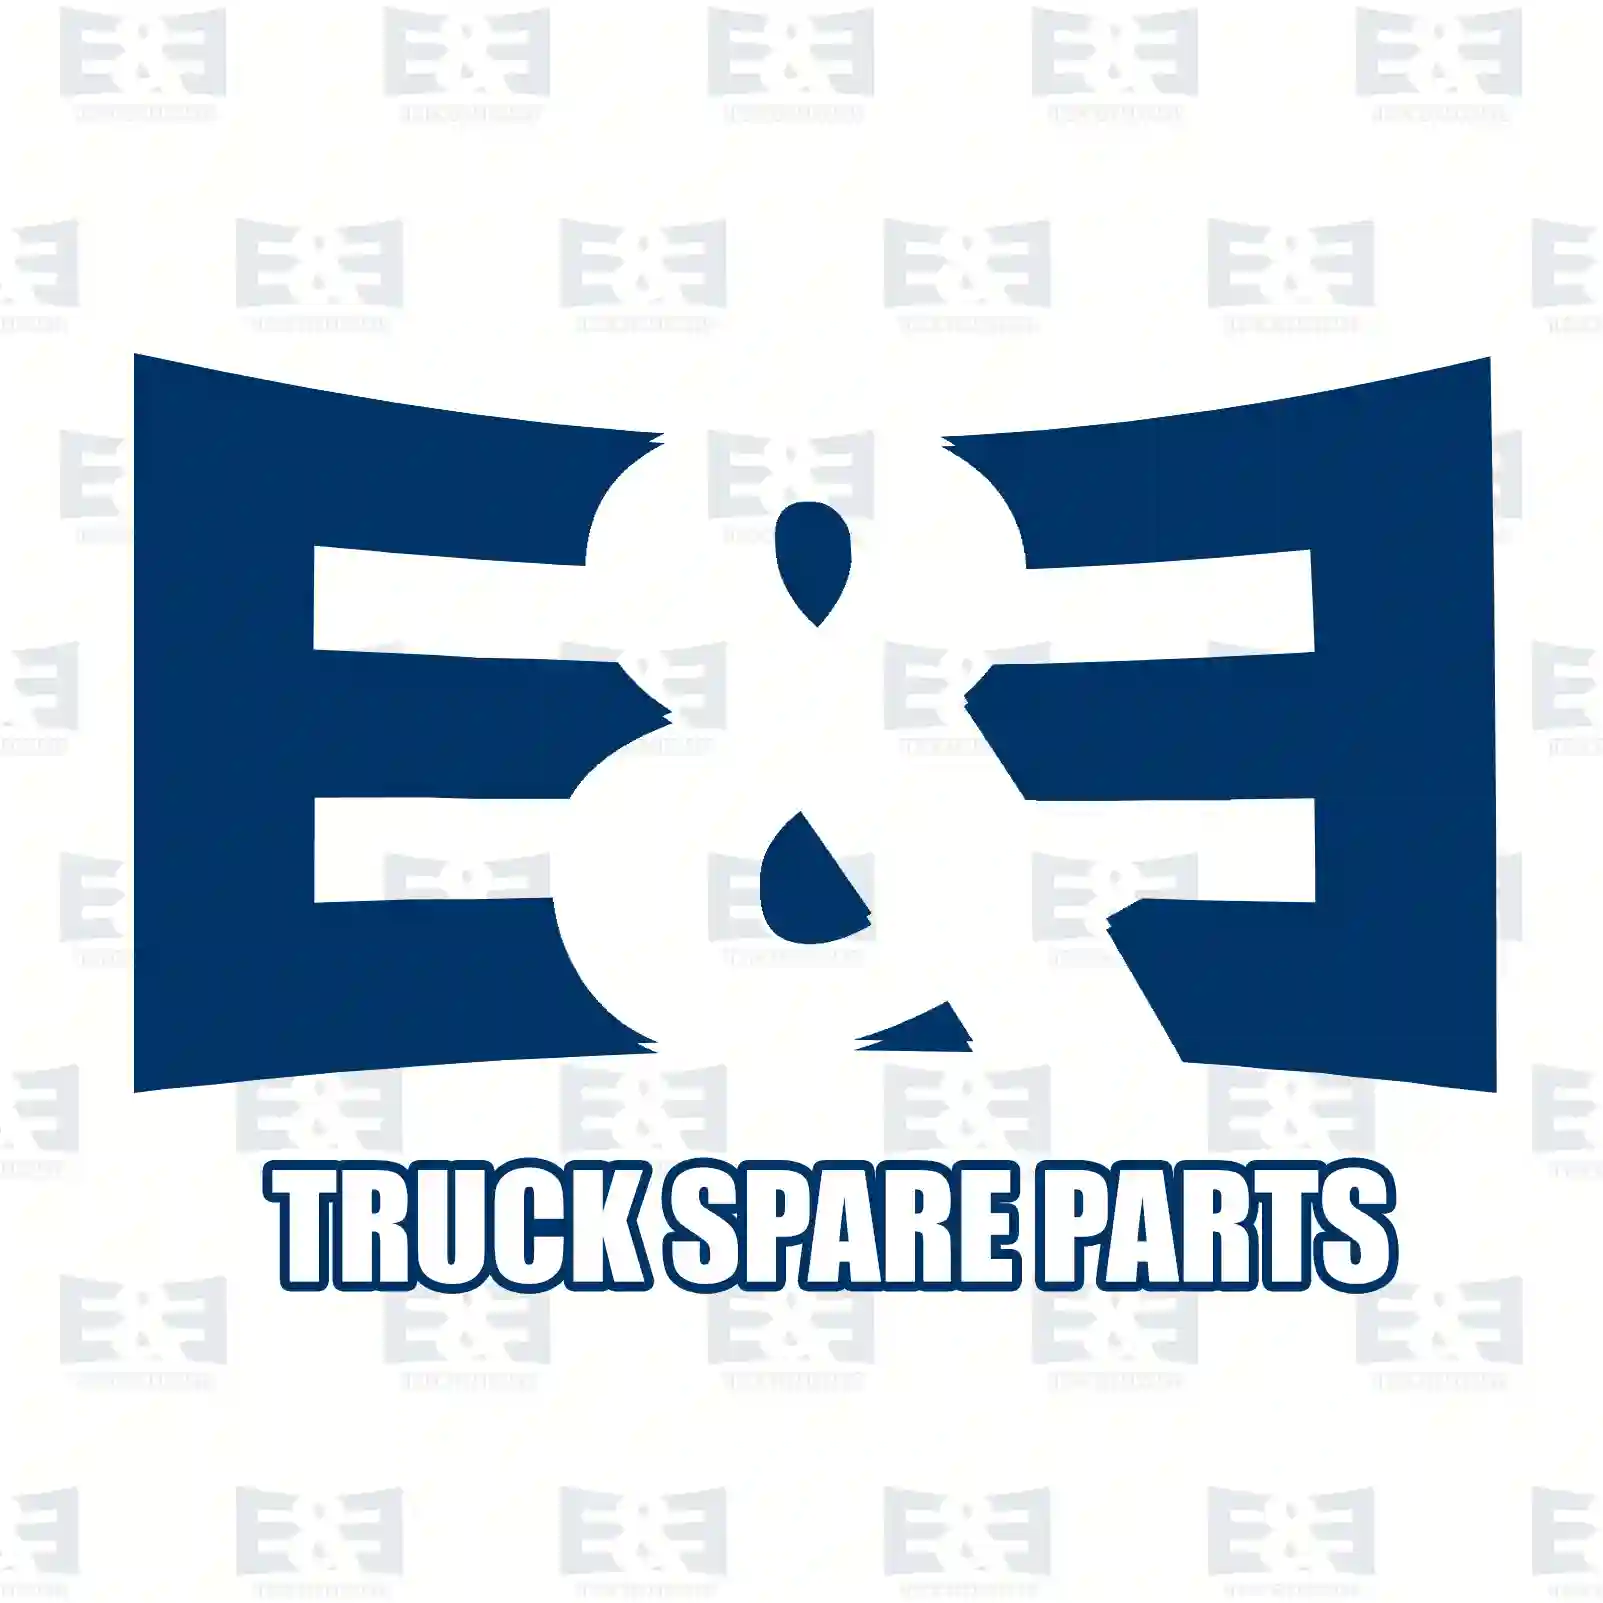  Remote control, level control || E&E Truck Spare Parts | Truck Spare Parts, Auotomotive Spare Parts